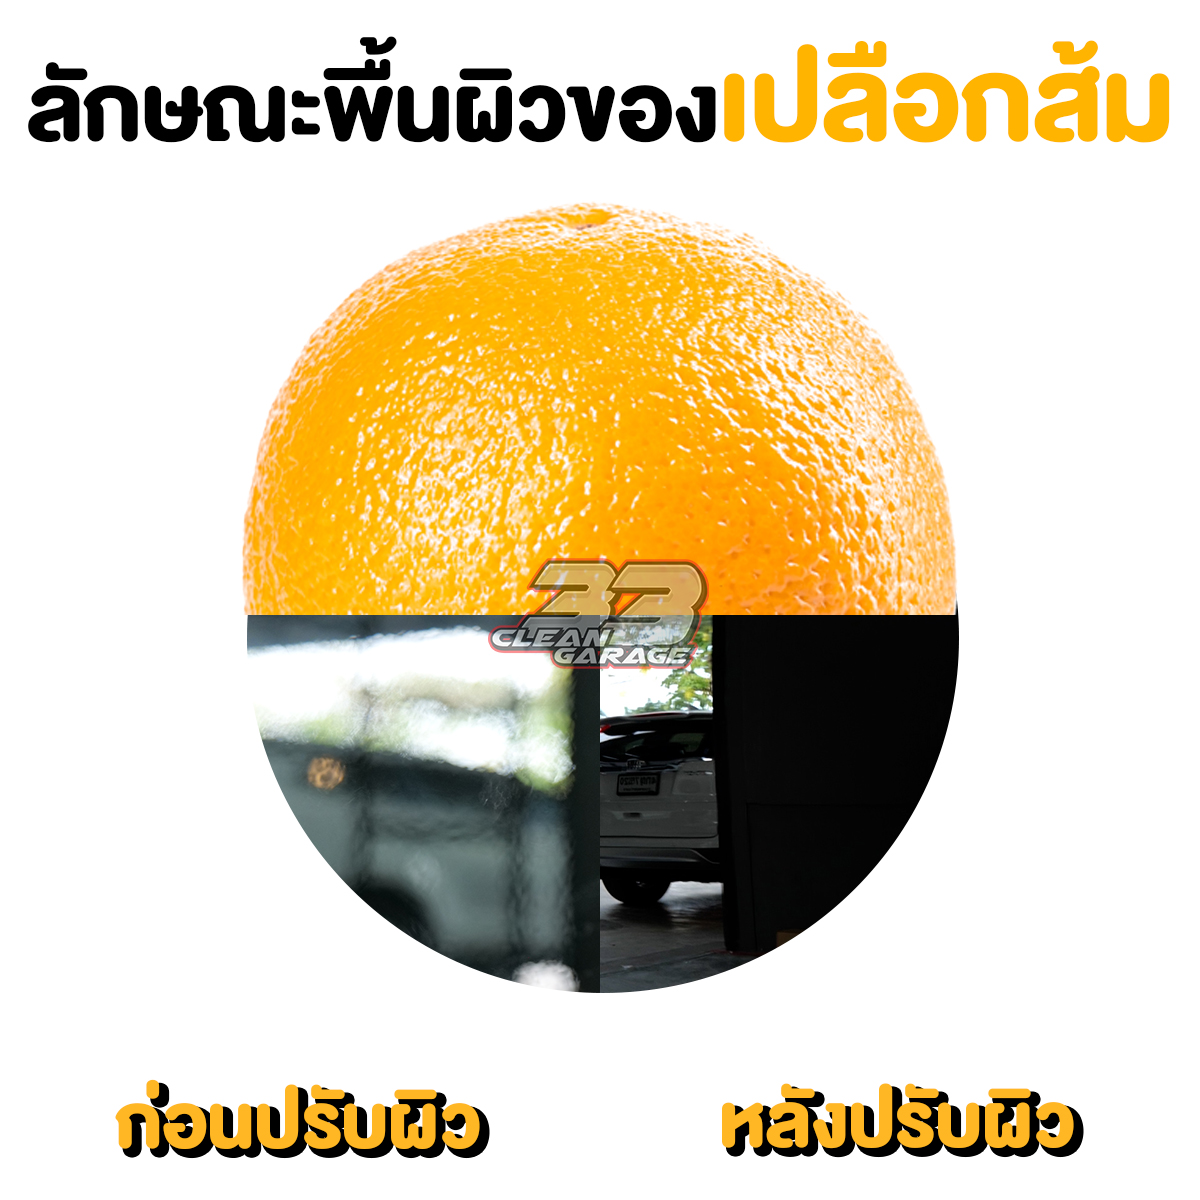 ผิวส้มคืออะไรบนสีรถ?